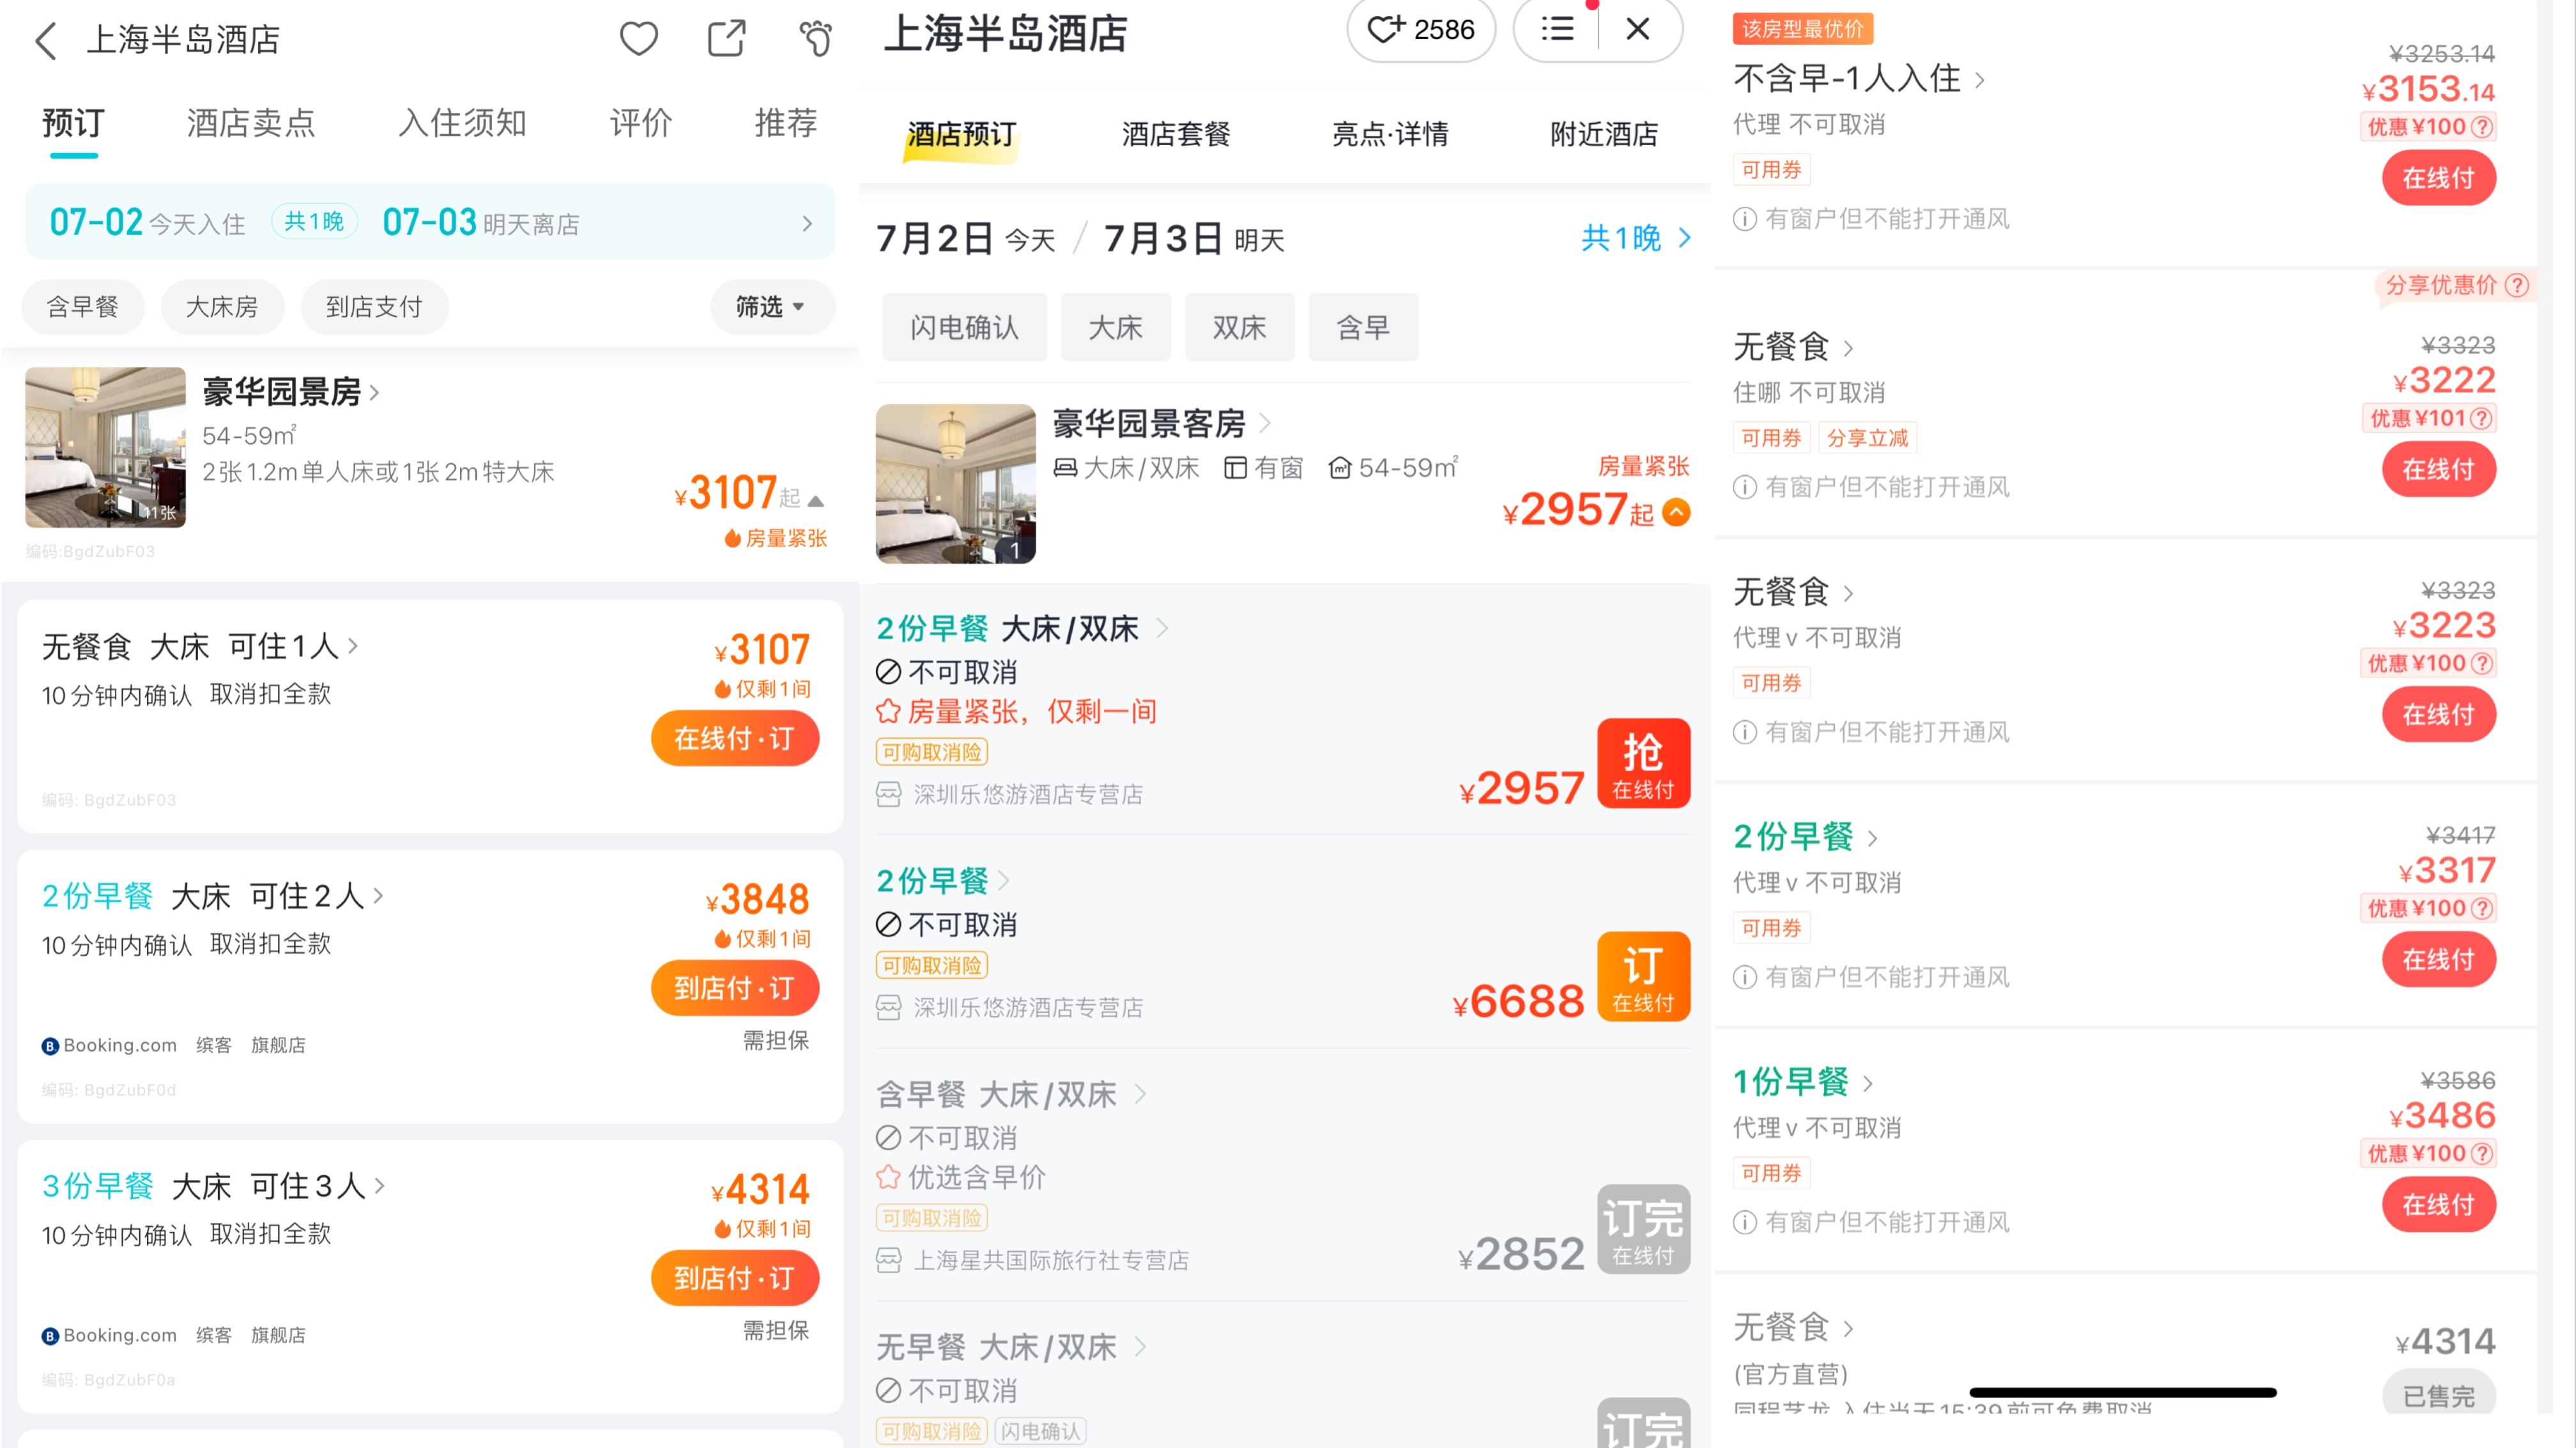 7月2日下午显示的上海半岛酒店豪华园景房预订价格截图，从左至右分别为：去哪儿、飞猪、同程。